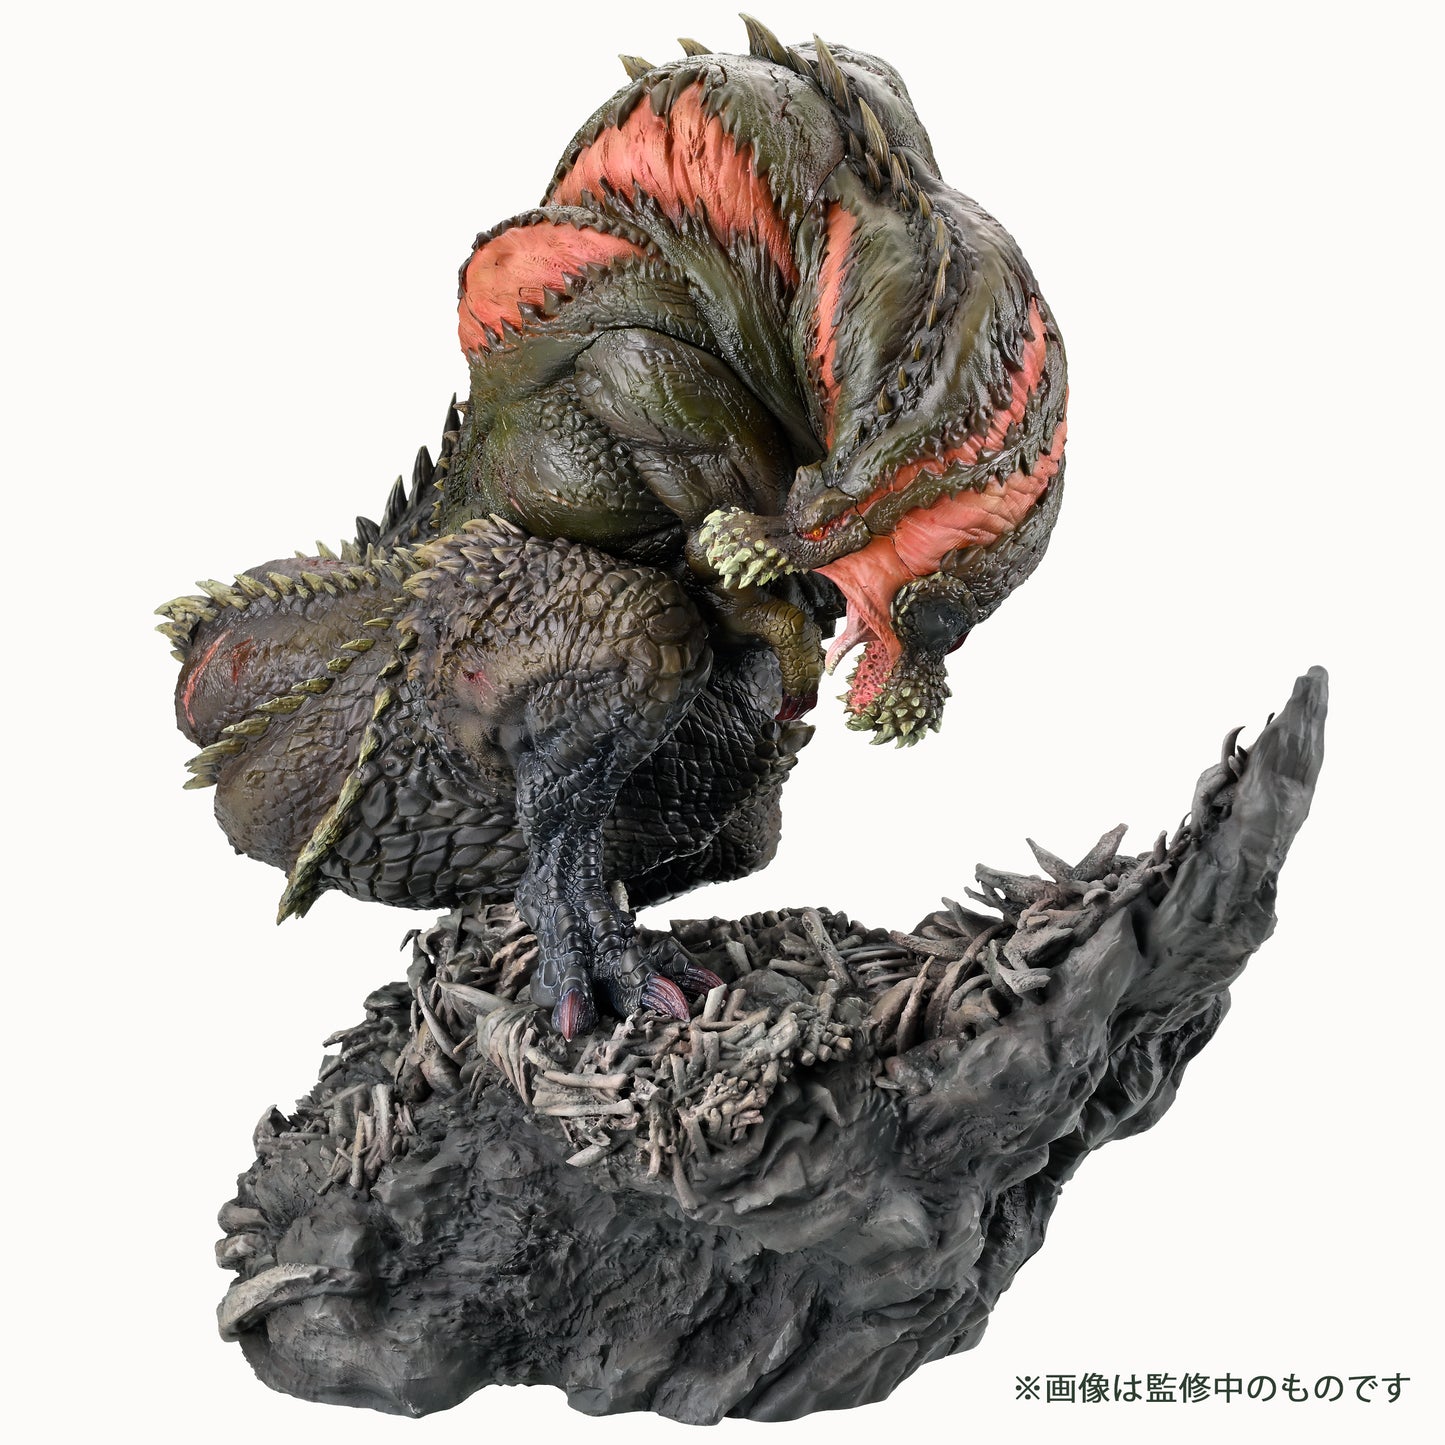 【Resale】Capcom Figure Builder Creators Model "Monster Hunter" Terrifying Violent Wyvern Deviljho